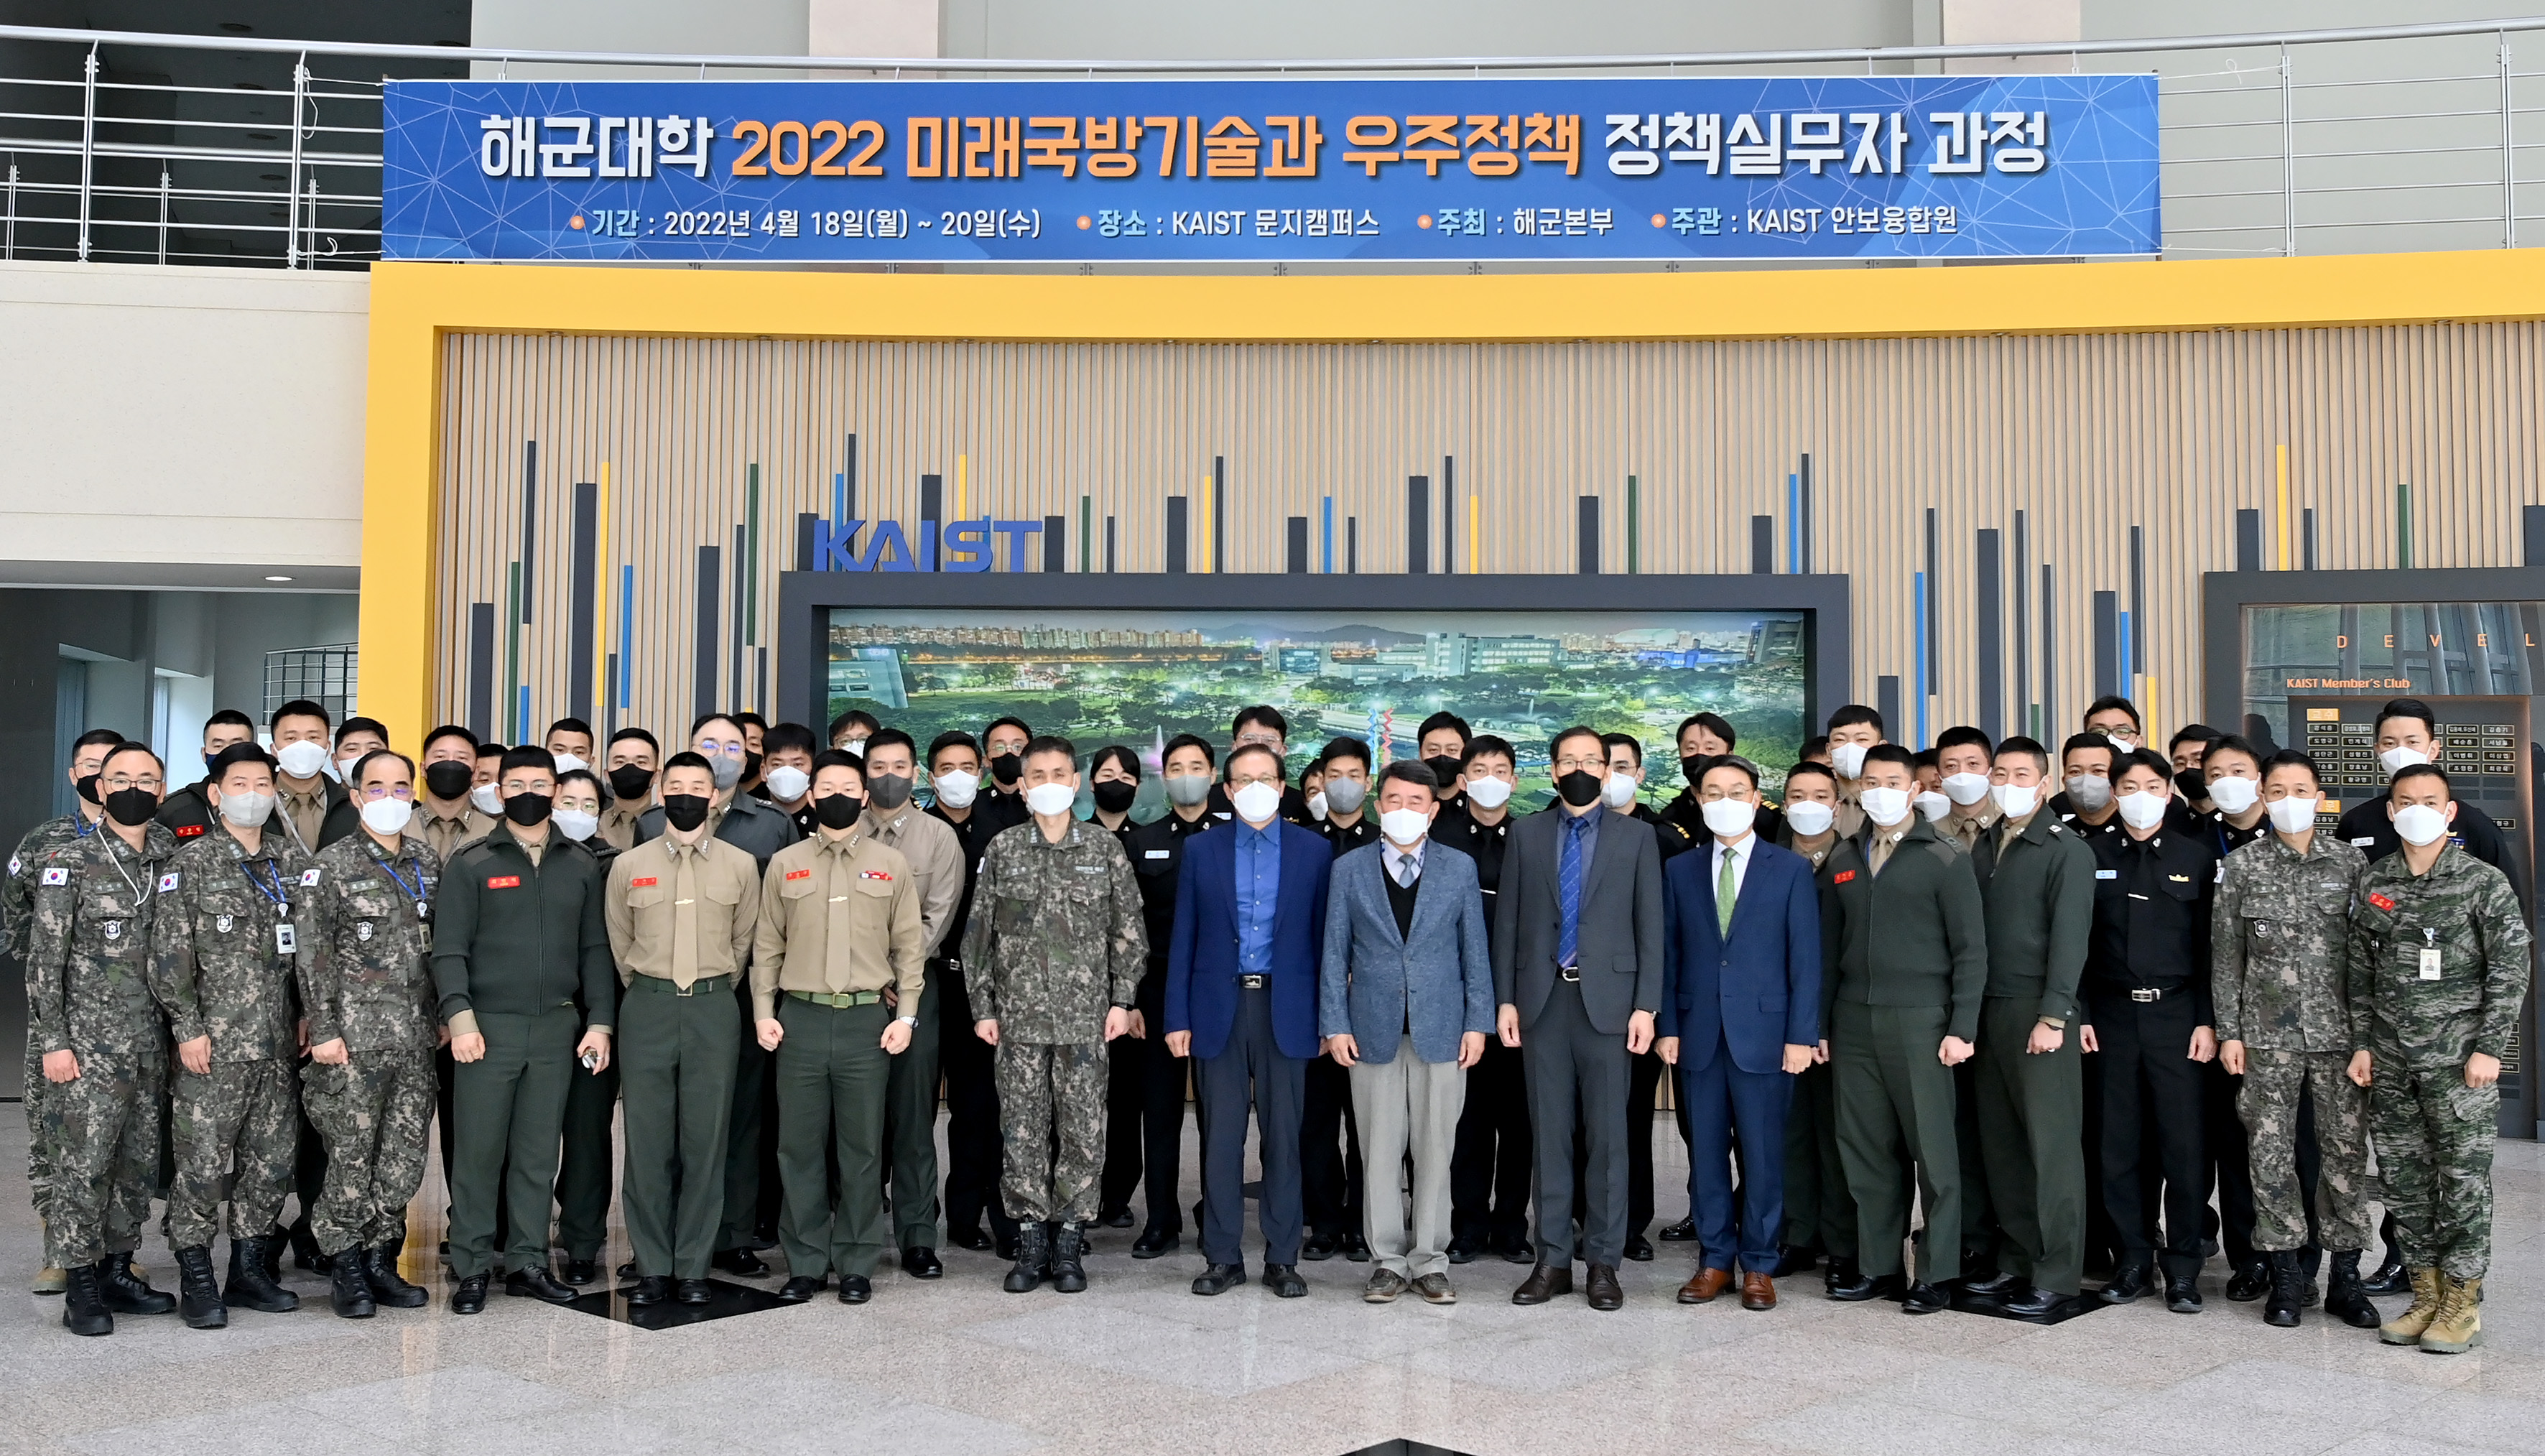 해군대학 2022 미래국방기술과 우주정책 실무자과정 개최